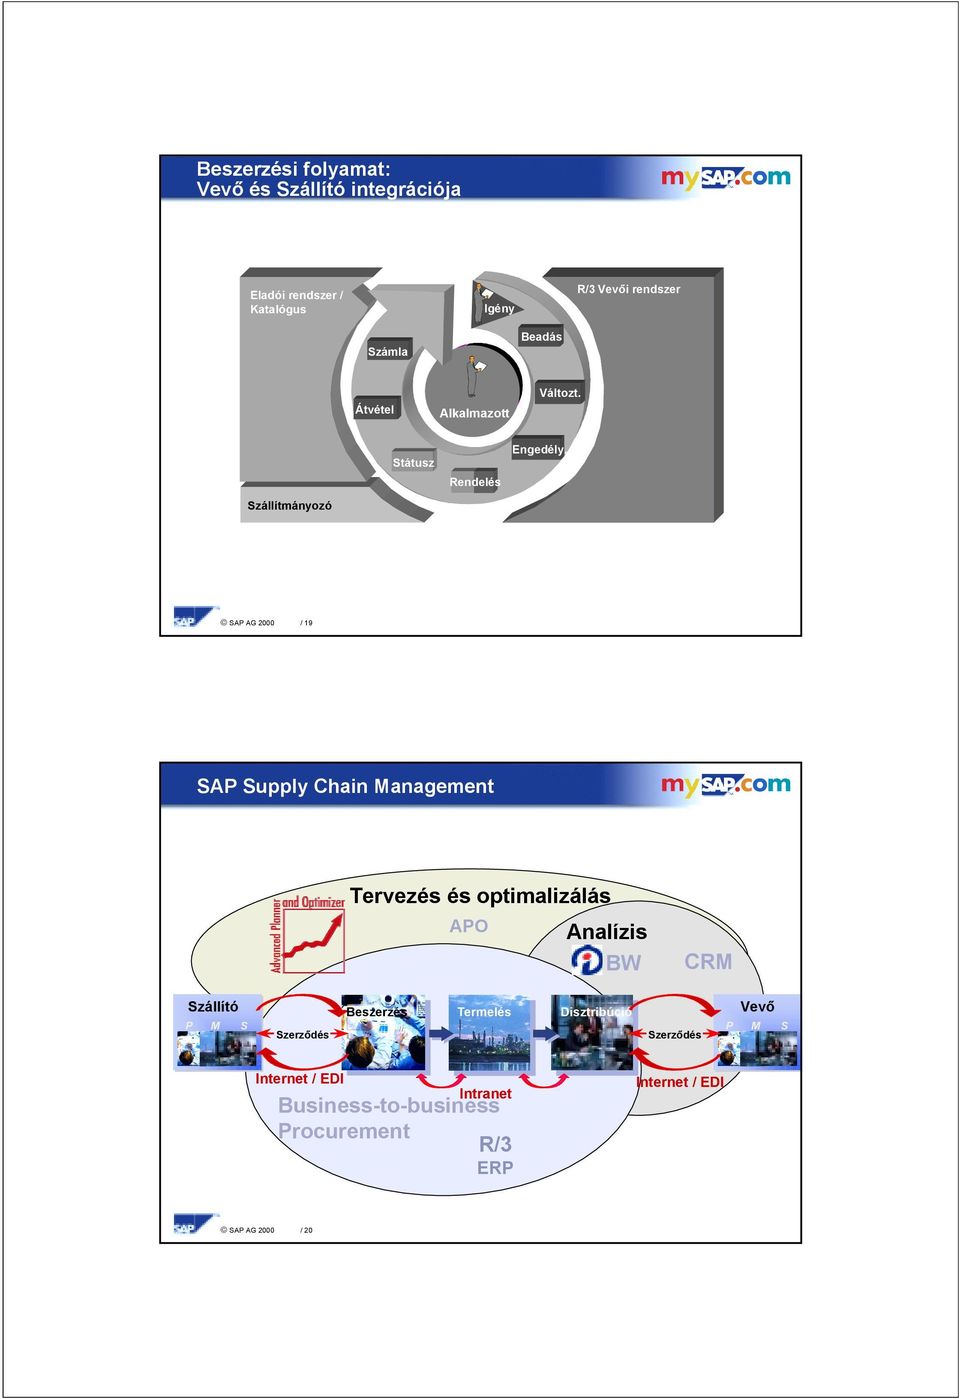 Szállítmányozó SAP AG 2000 / 19 SAP Supply hain Management Tervezés és optimalizálás APO Analízis BW RM Szállító